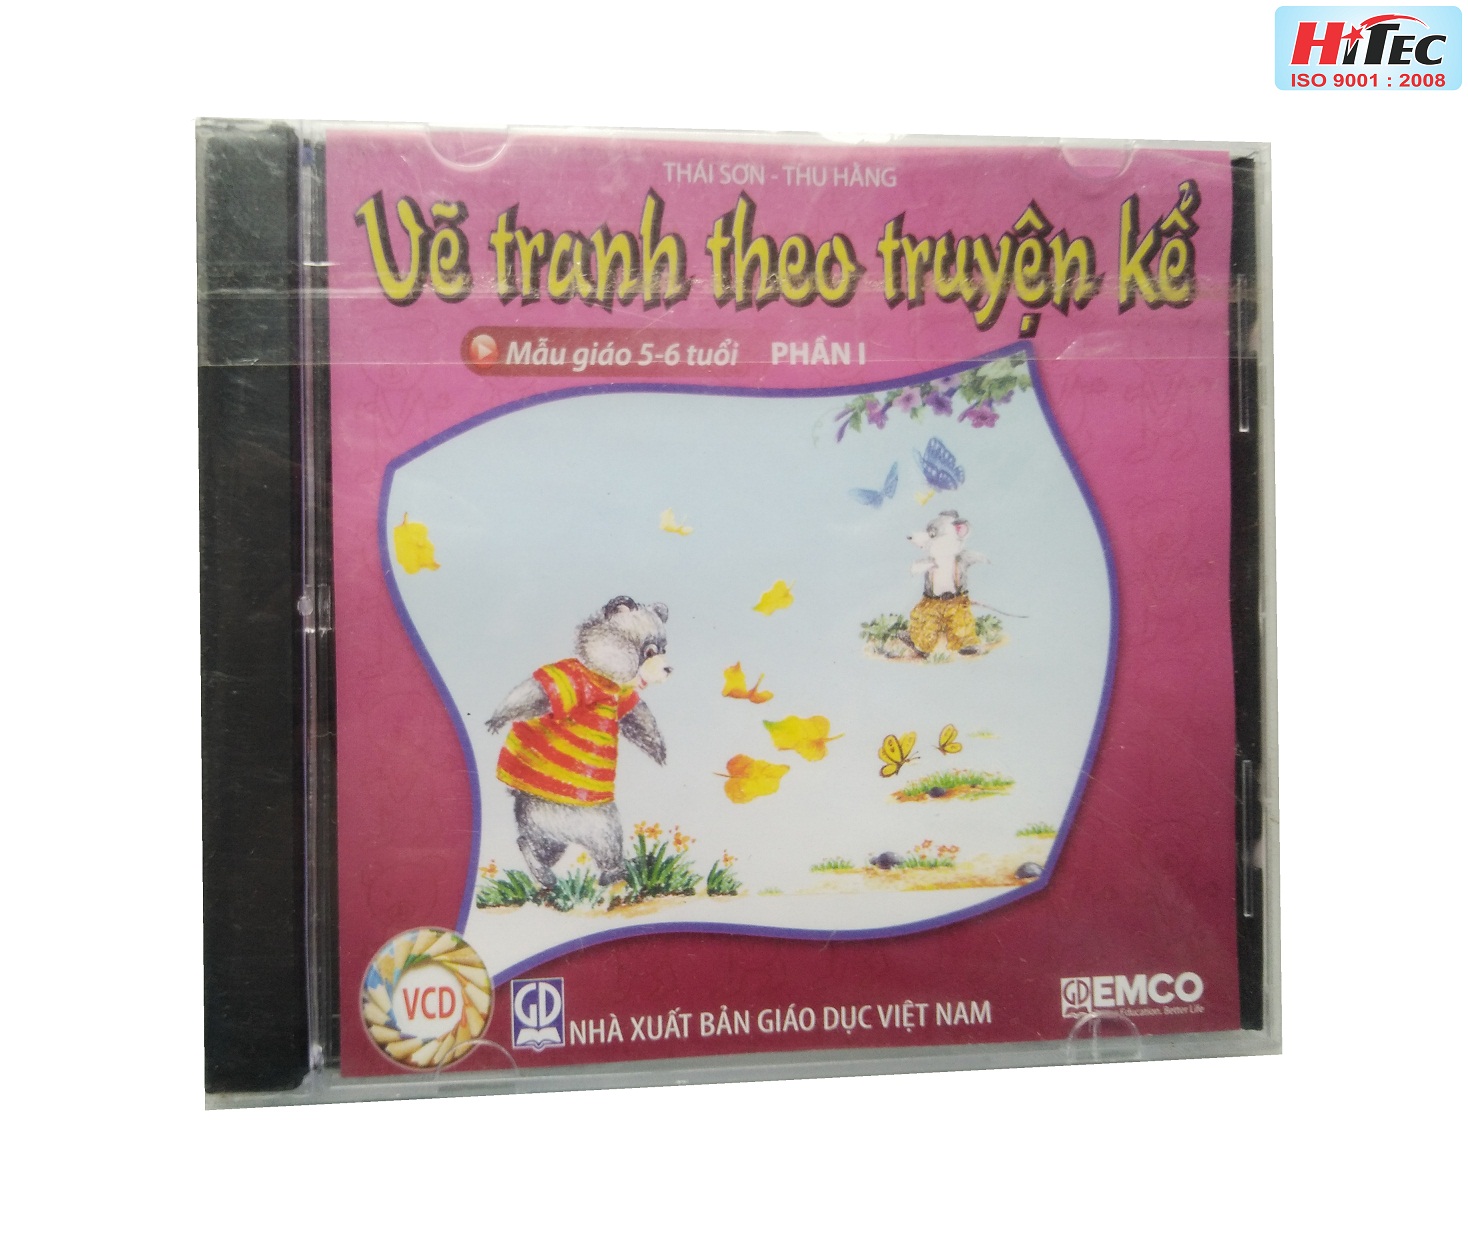 Bộ đĩa VCD vẽ tranh theo truyện kể (5-6 tuổi)